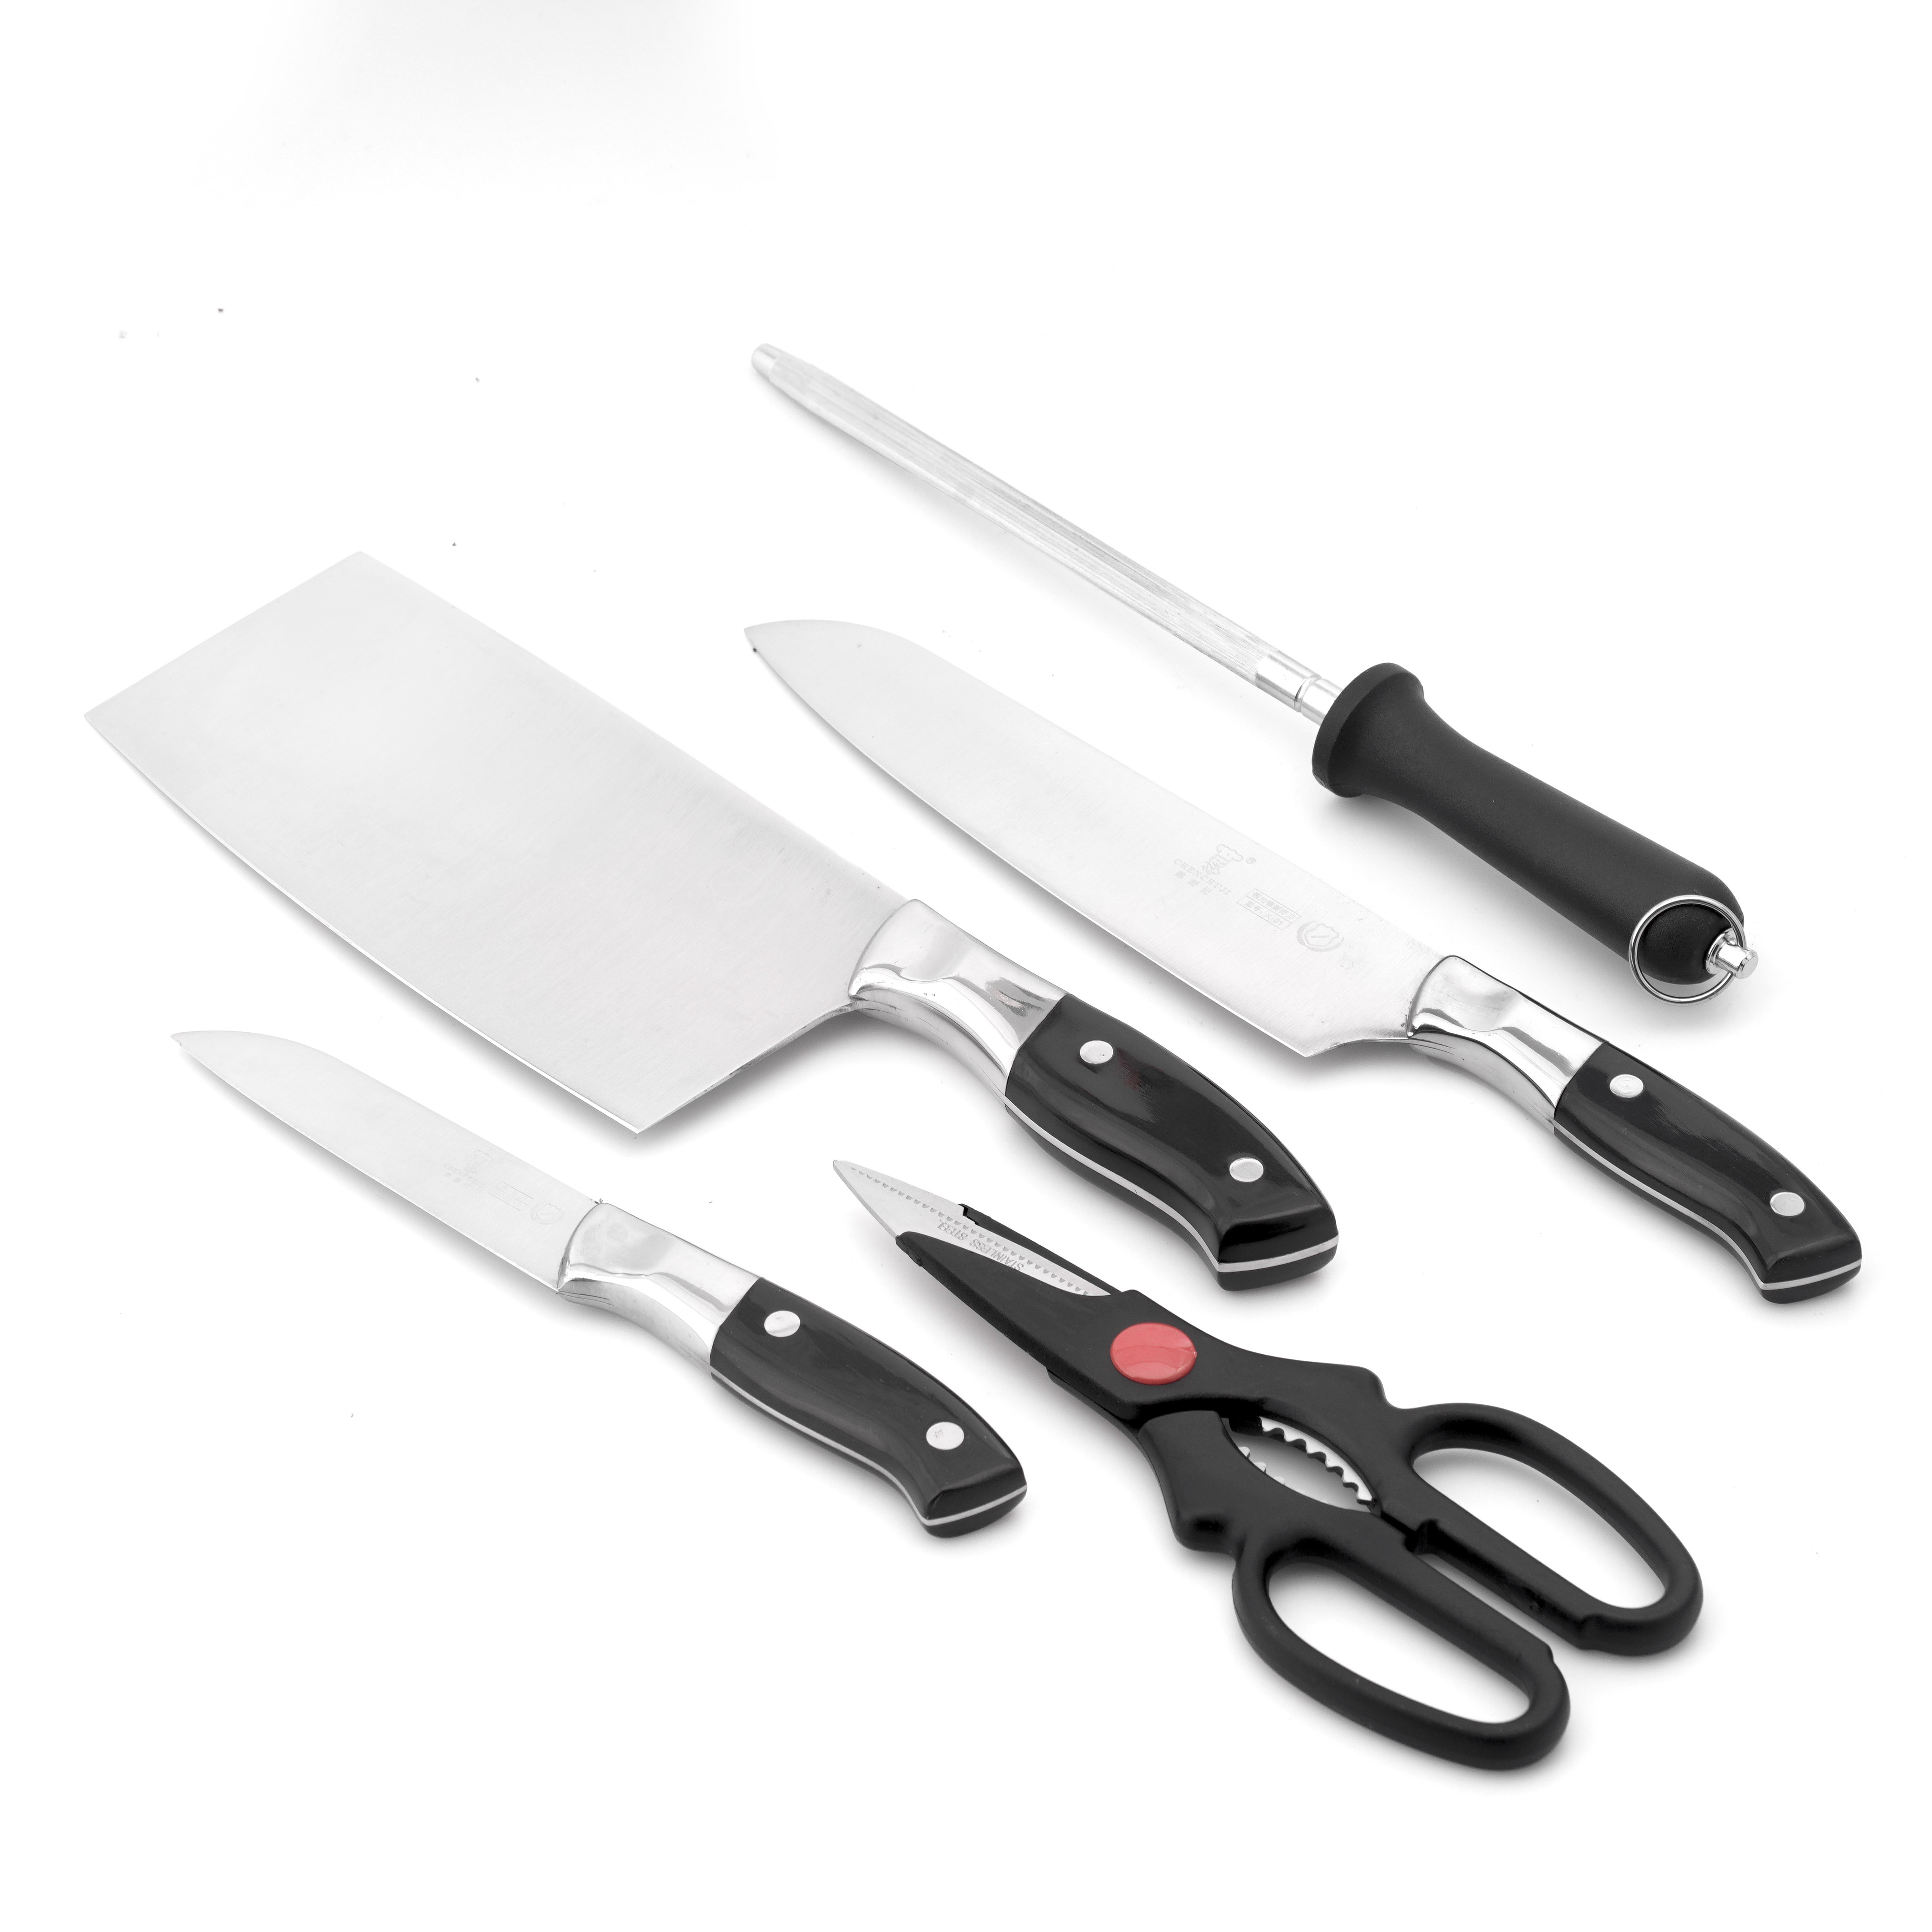 Bộ dao nhà bếp 6 món (3 dao, 1 đồ mài, 1 kéo, 1 hộp đựng dao bằng nhựa)